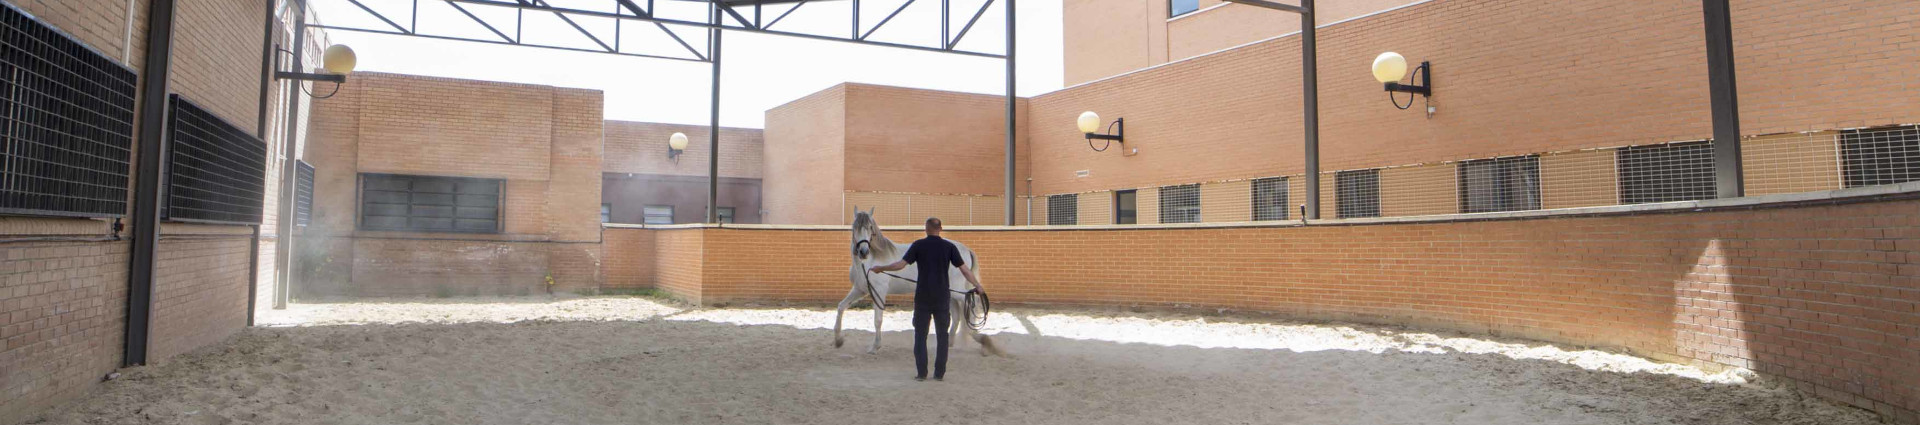 Hospital de Caballos situado en el Campus de Espinardo de Murcia 